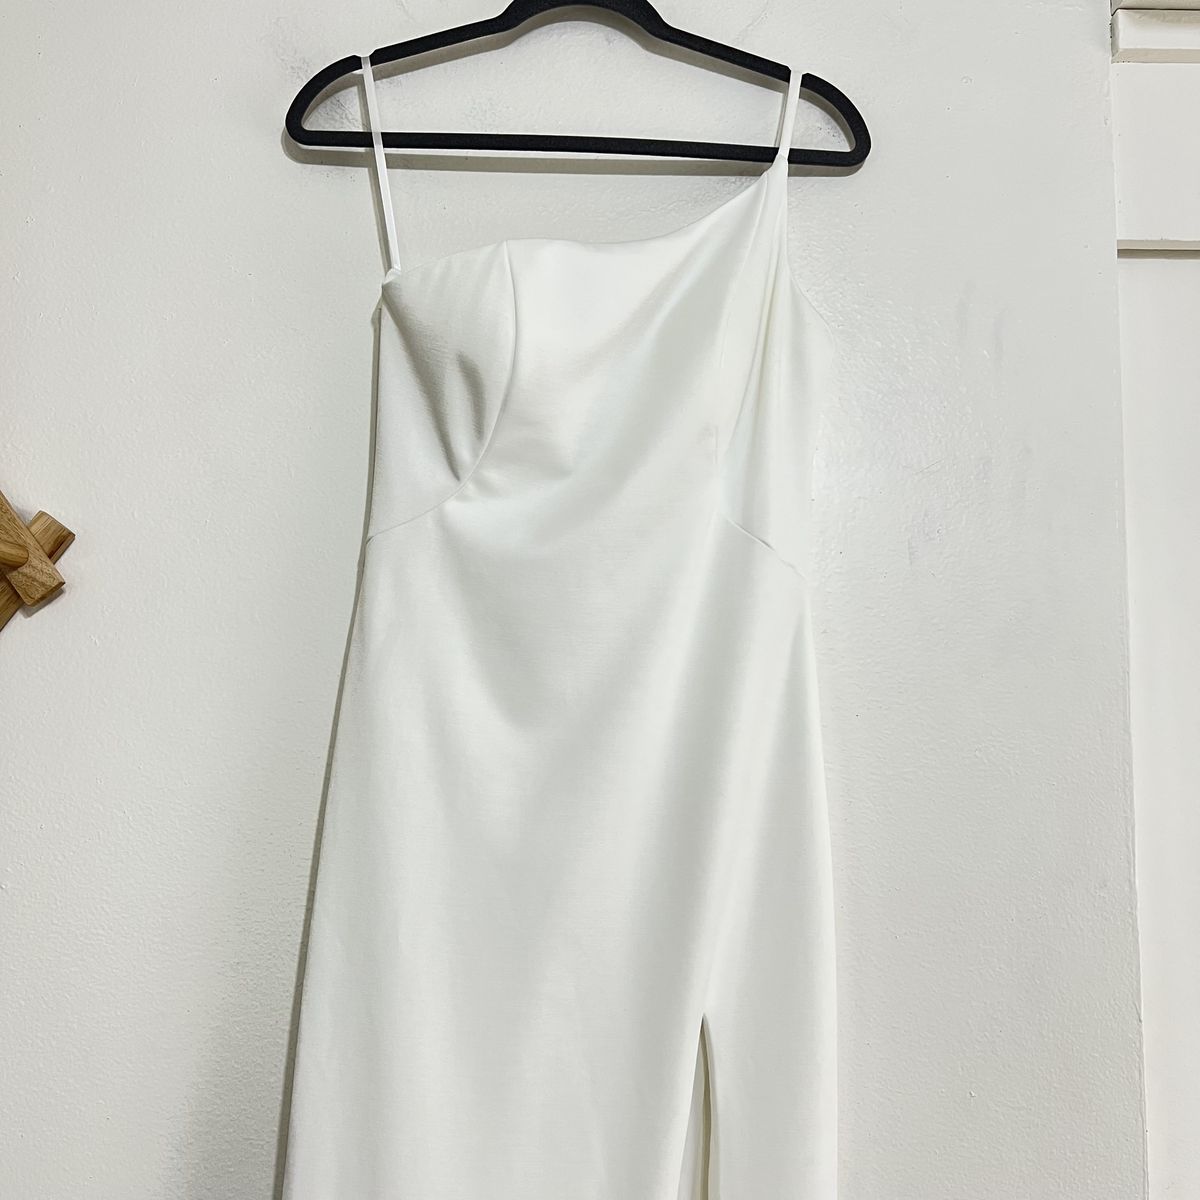 Style 28176 La Femme Size 6 Wedding One Shoulder White Side Slit Dress on Queenly